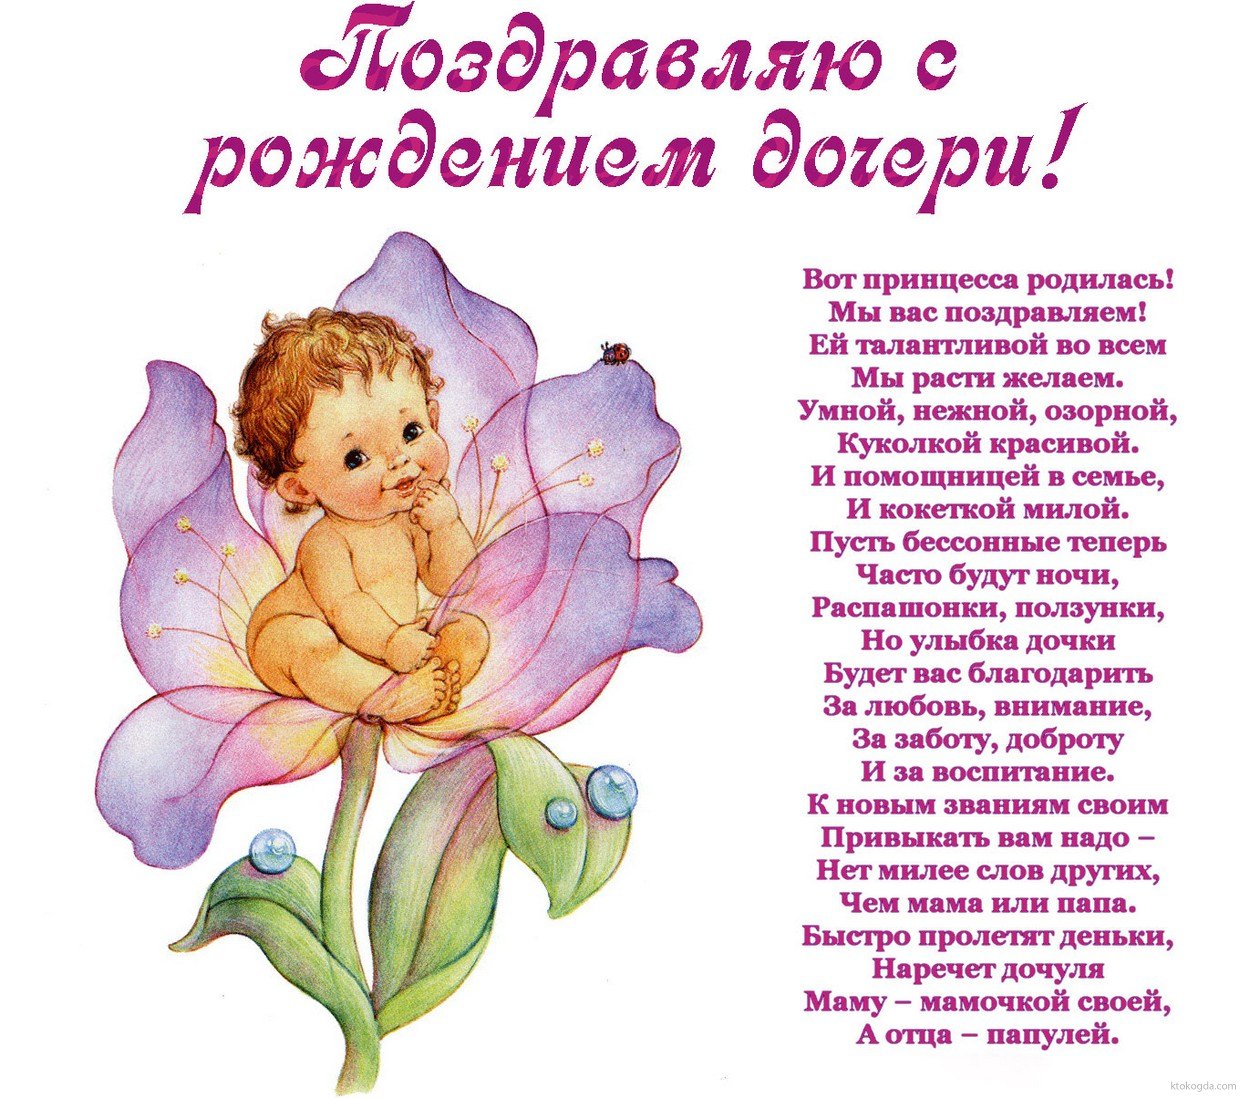 Поздравления родителям на день рождение дочери 3 года (30 картинок) ⚡ баня-на-окружной.рф